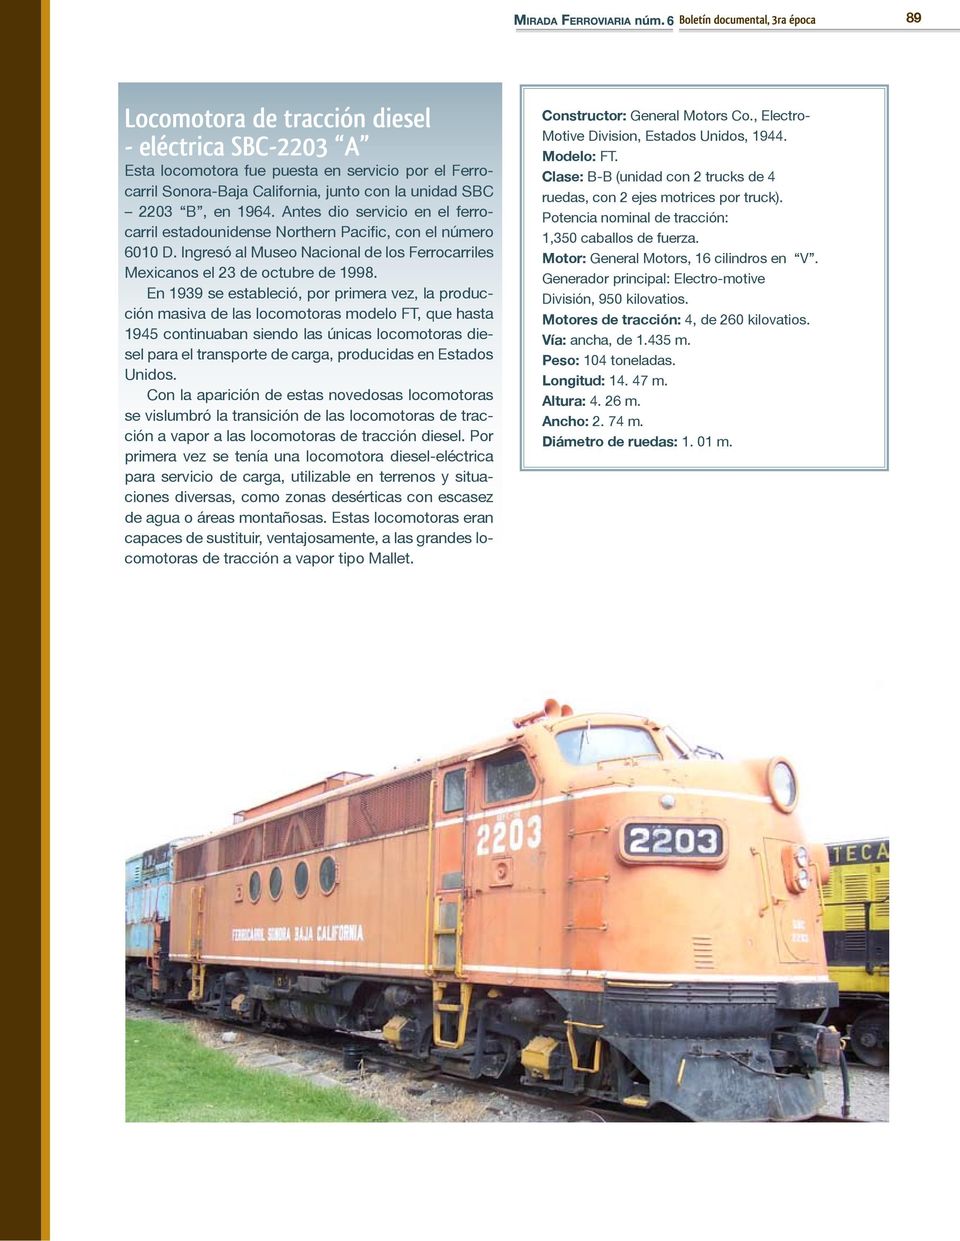 En 1939 se estableció, por primera vez, la producción masiva de las locomotoras modelo FT, que hasta 1945 continuaban siendo las únicas locomotoras diesel para el transporte de carga, producidas en